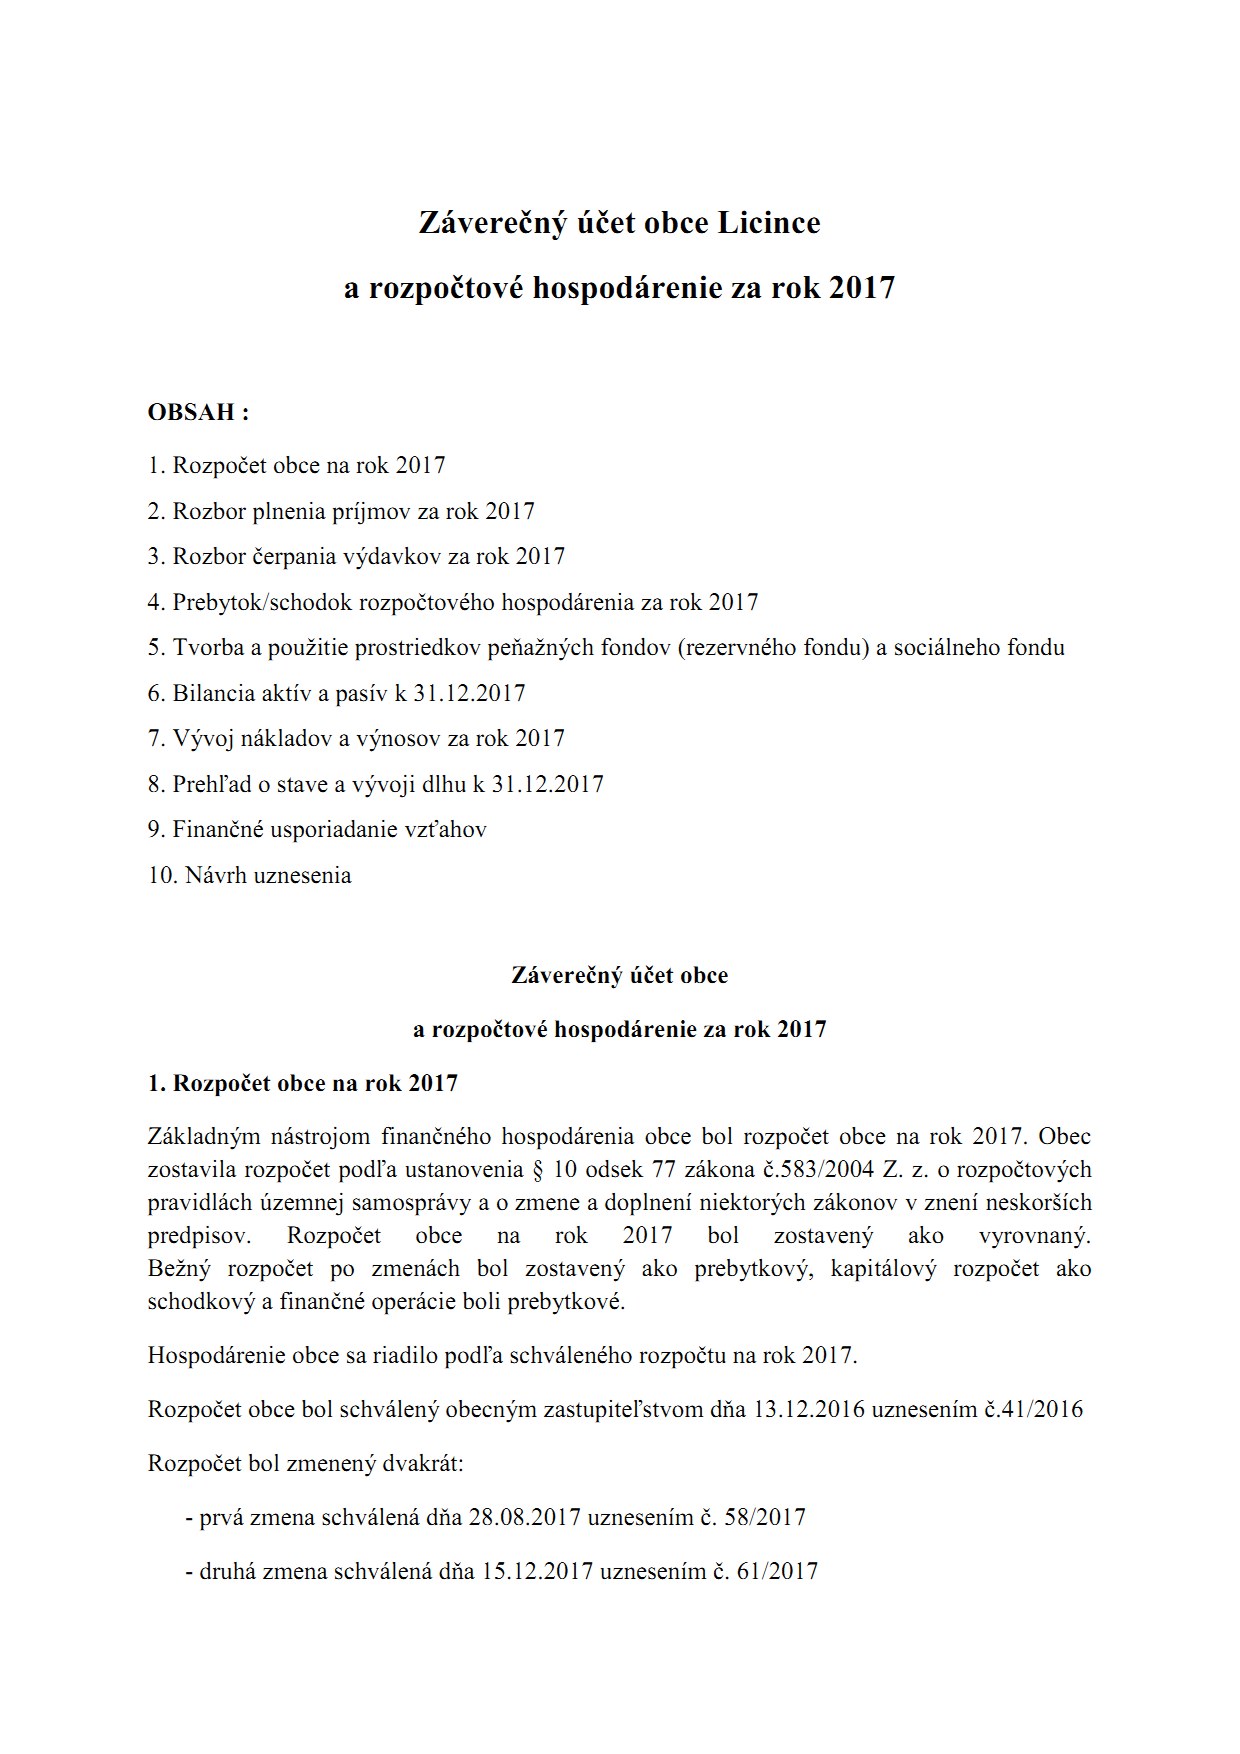 Záverečný účet obce za rok 2016